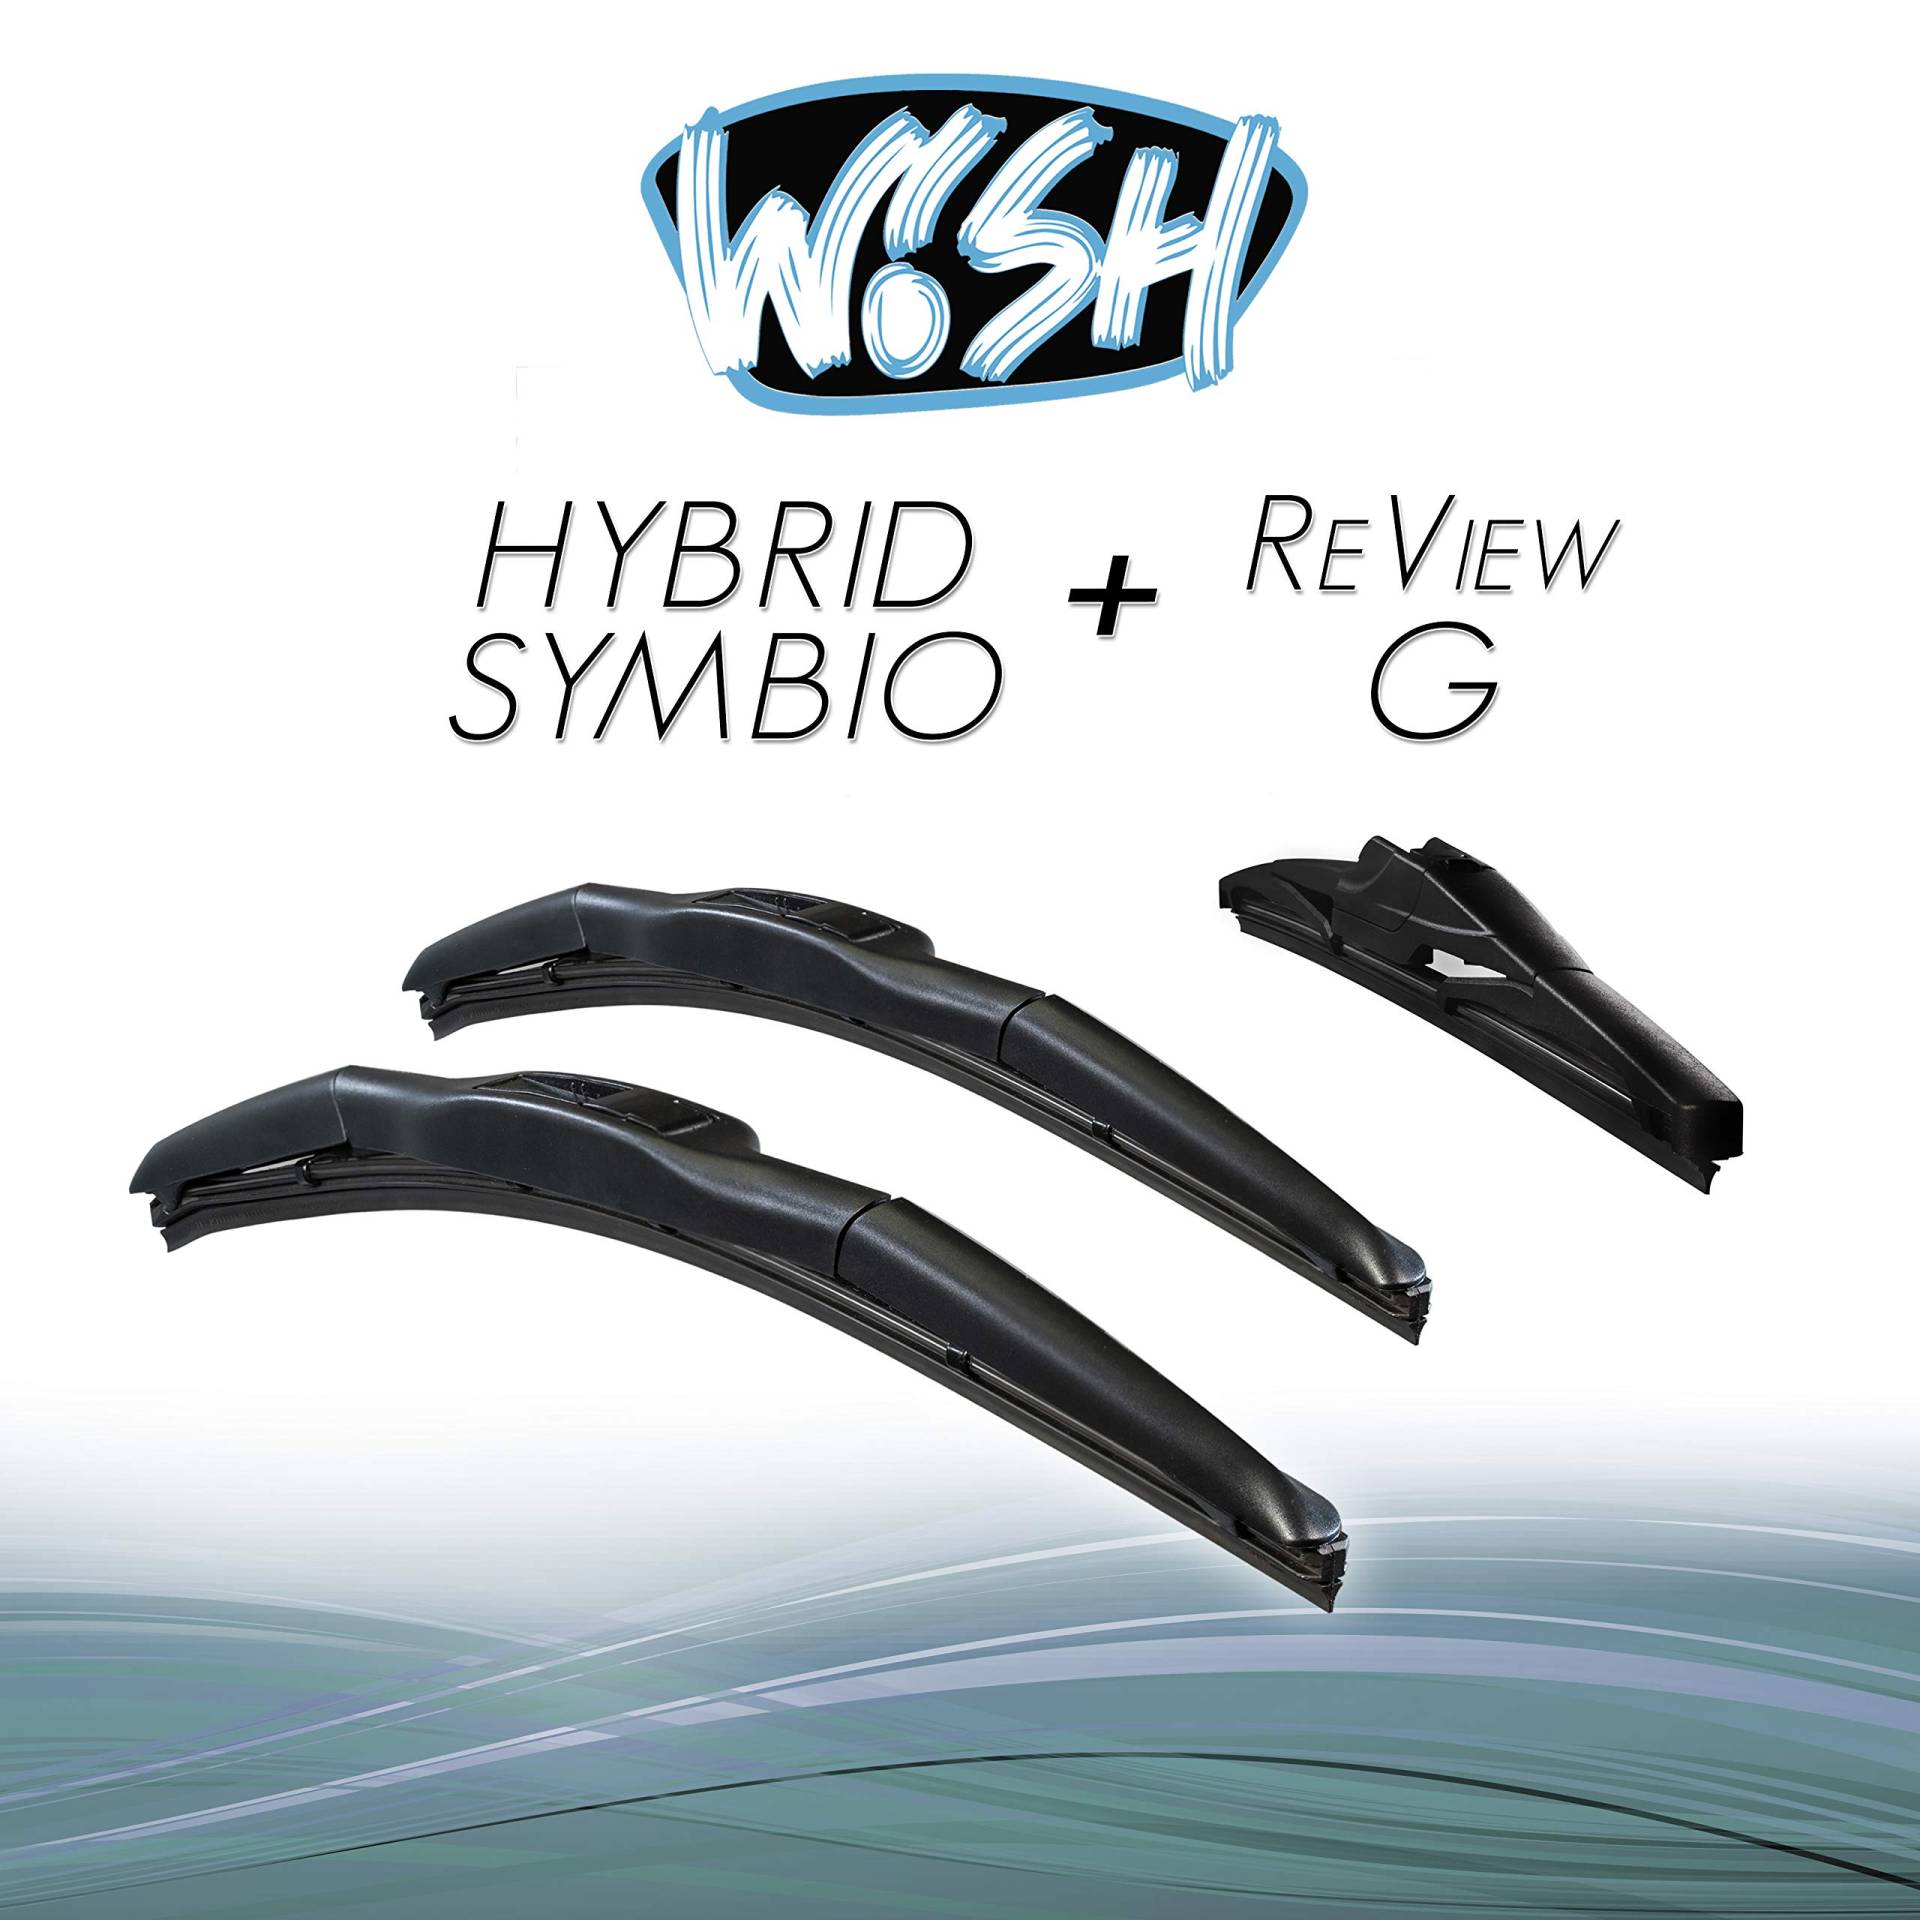 Wish® Hybrid Symbio Satz Front + Heck Scheibenwischer Länge: 24" 600mm / 16" 400mm / 14" 350mm Wischblätter Vorne und Hinten Hybrid-Scheibenwischer + Review G HS24.16.14RG von Wish